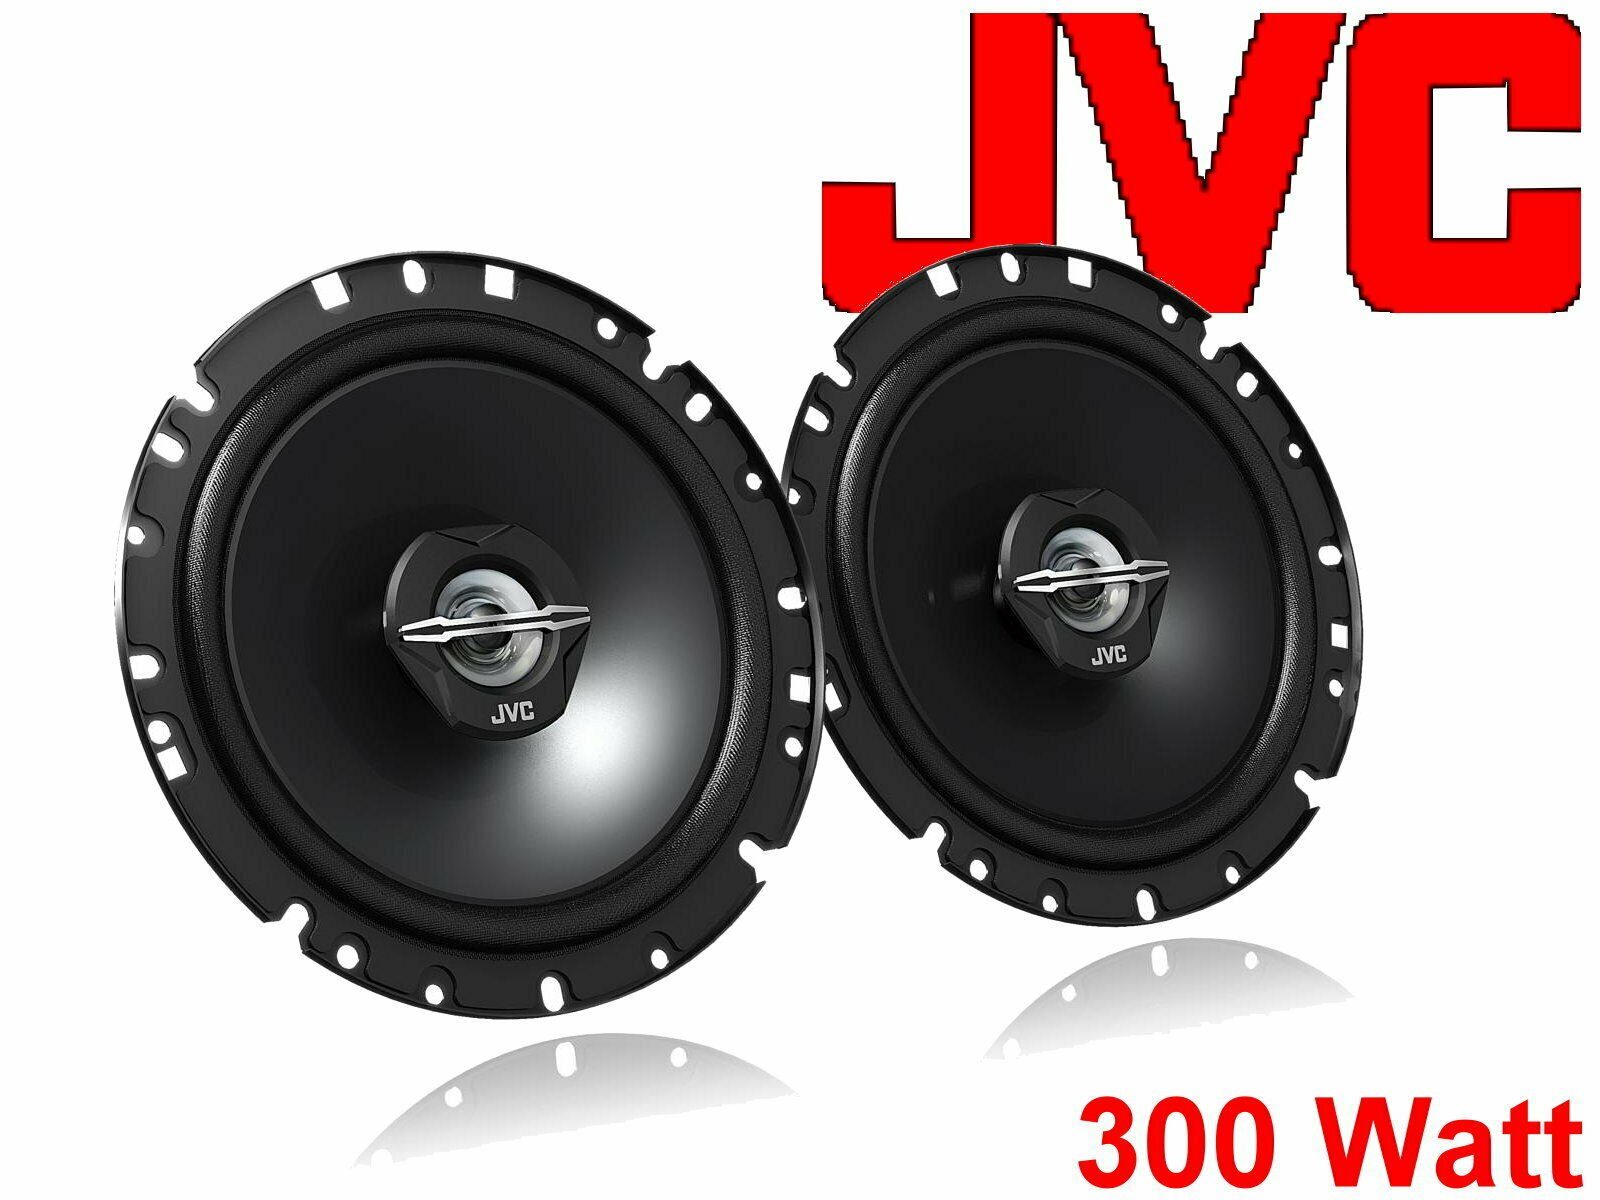 06-15 Lautsprecher für JVC W) DSX passend EOS Bj VW Set Auto-Lautsprecher (30